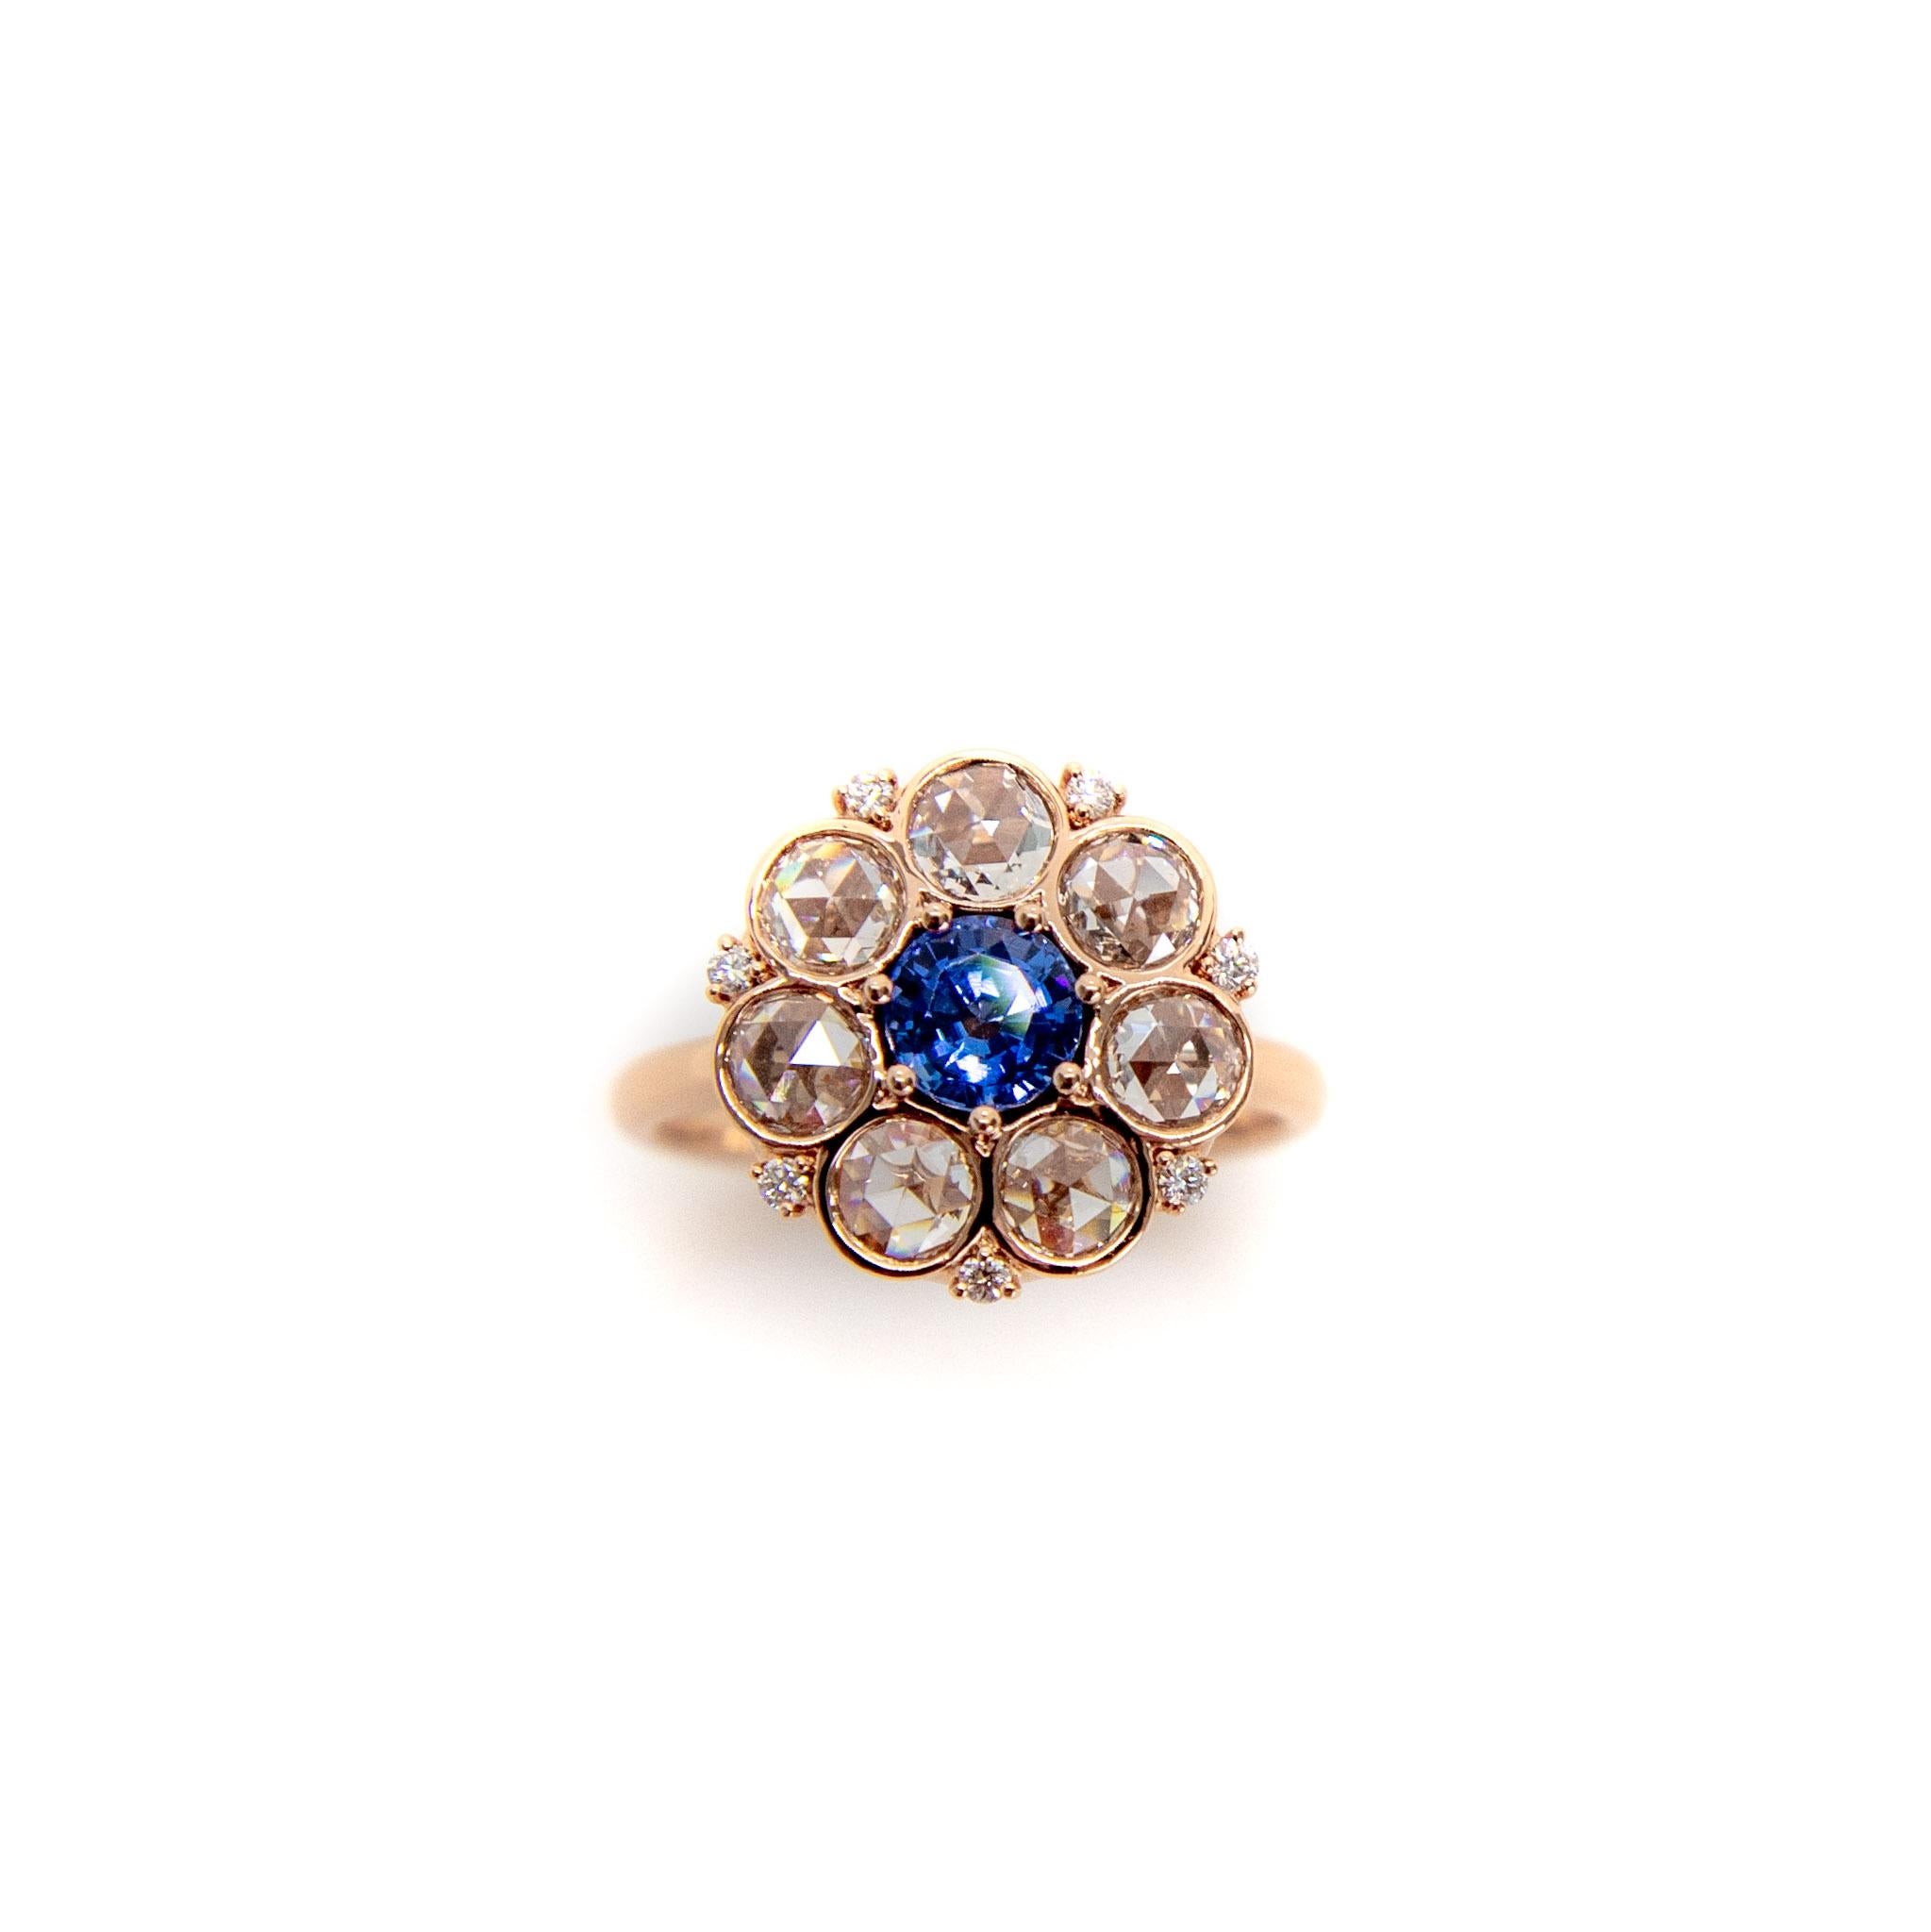 Schöner Saphir- und Rosenschliff-Diamant-Cluster-Ring mit verschnörkelter Galerie-Fassung, auf Bestellung gefertigt. 
Der Ring hat eine romantische, antike Ausstrahlung mit dem unglaublichen Funkeln von Diamanten im Rosenschliff und blauen Saphiren.